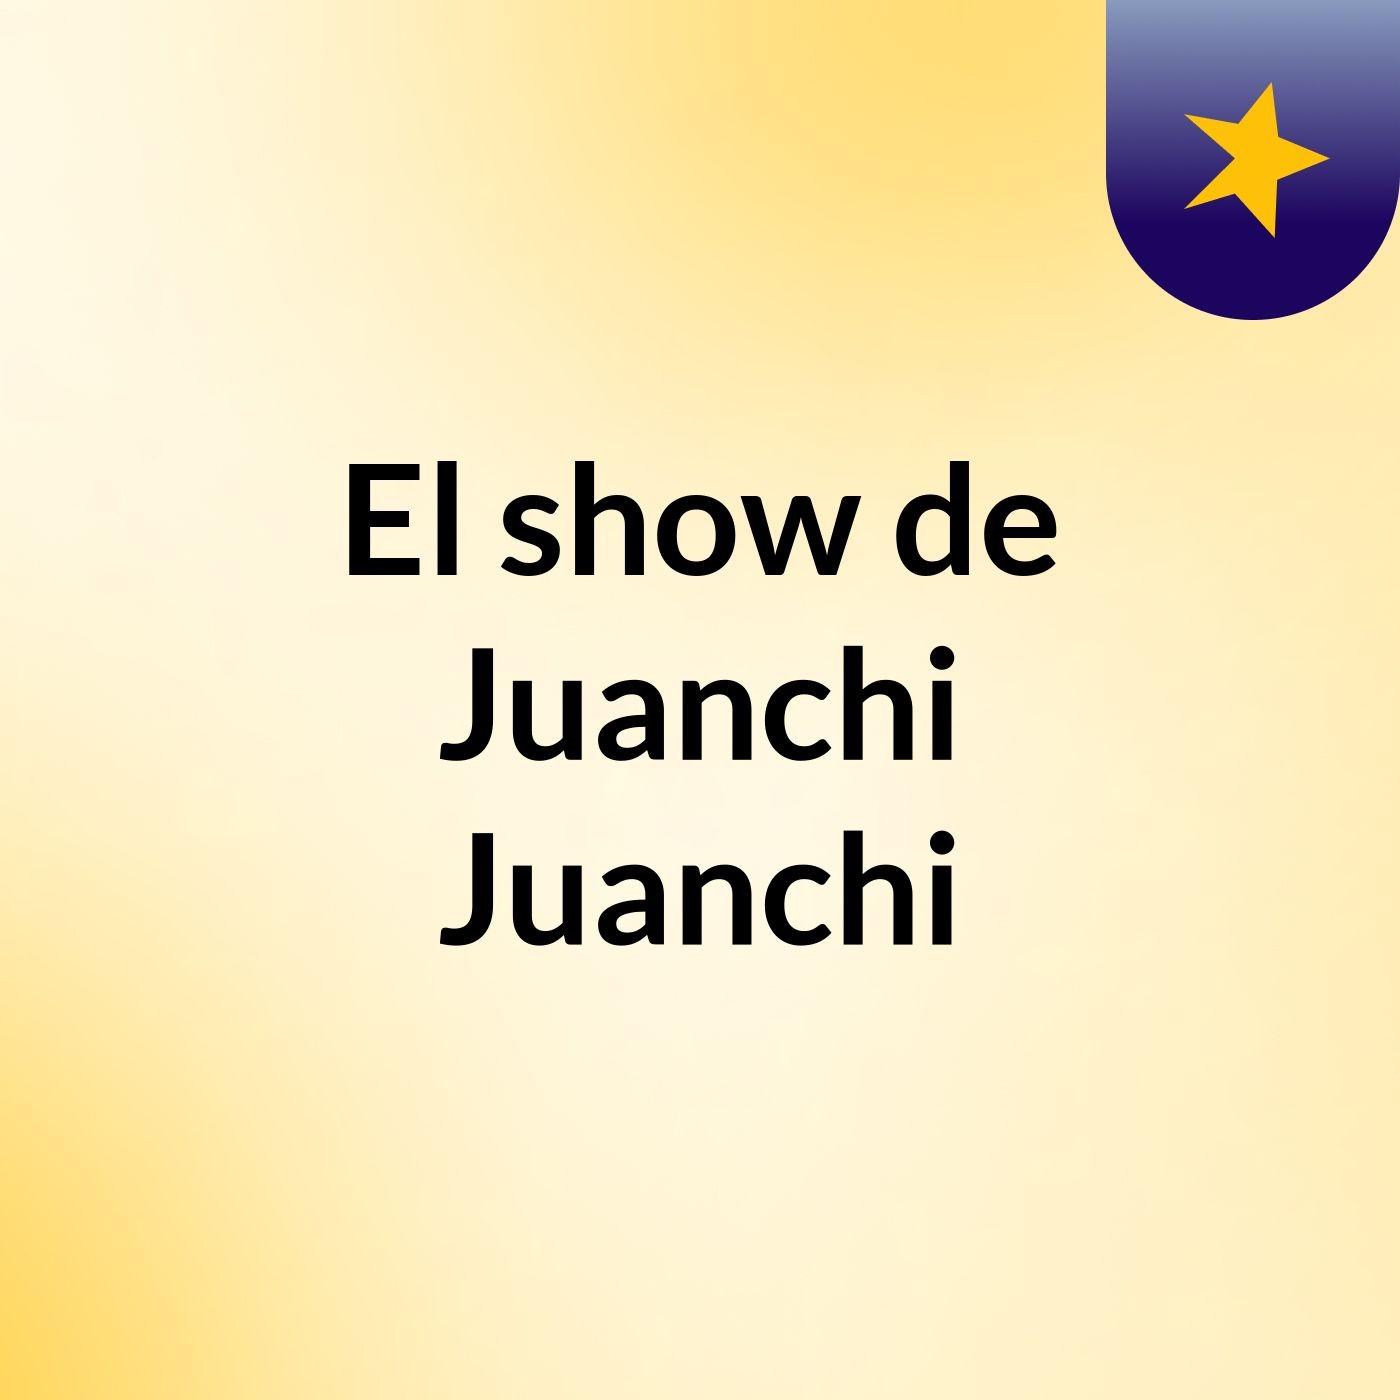 El show de Juanchi Juanchi